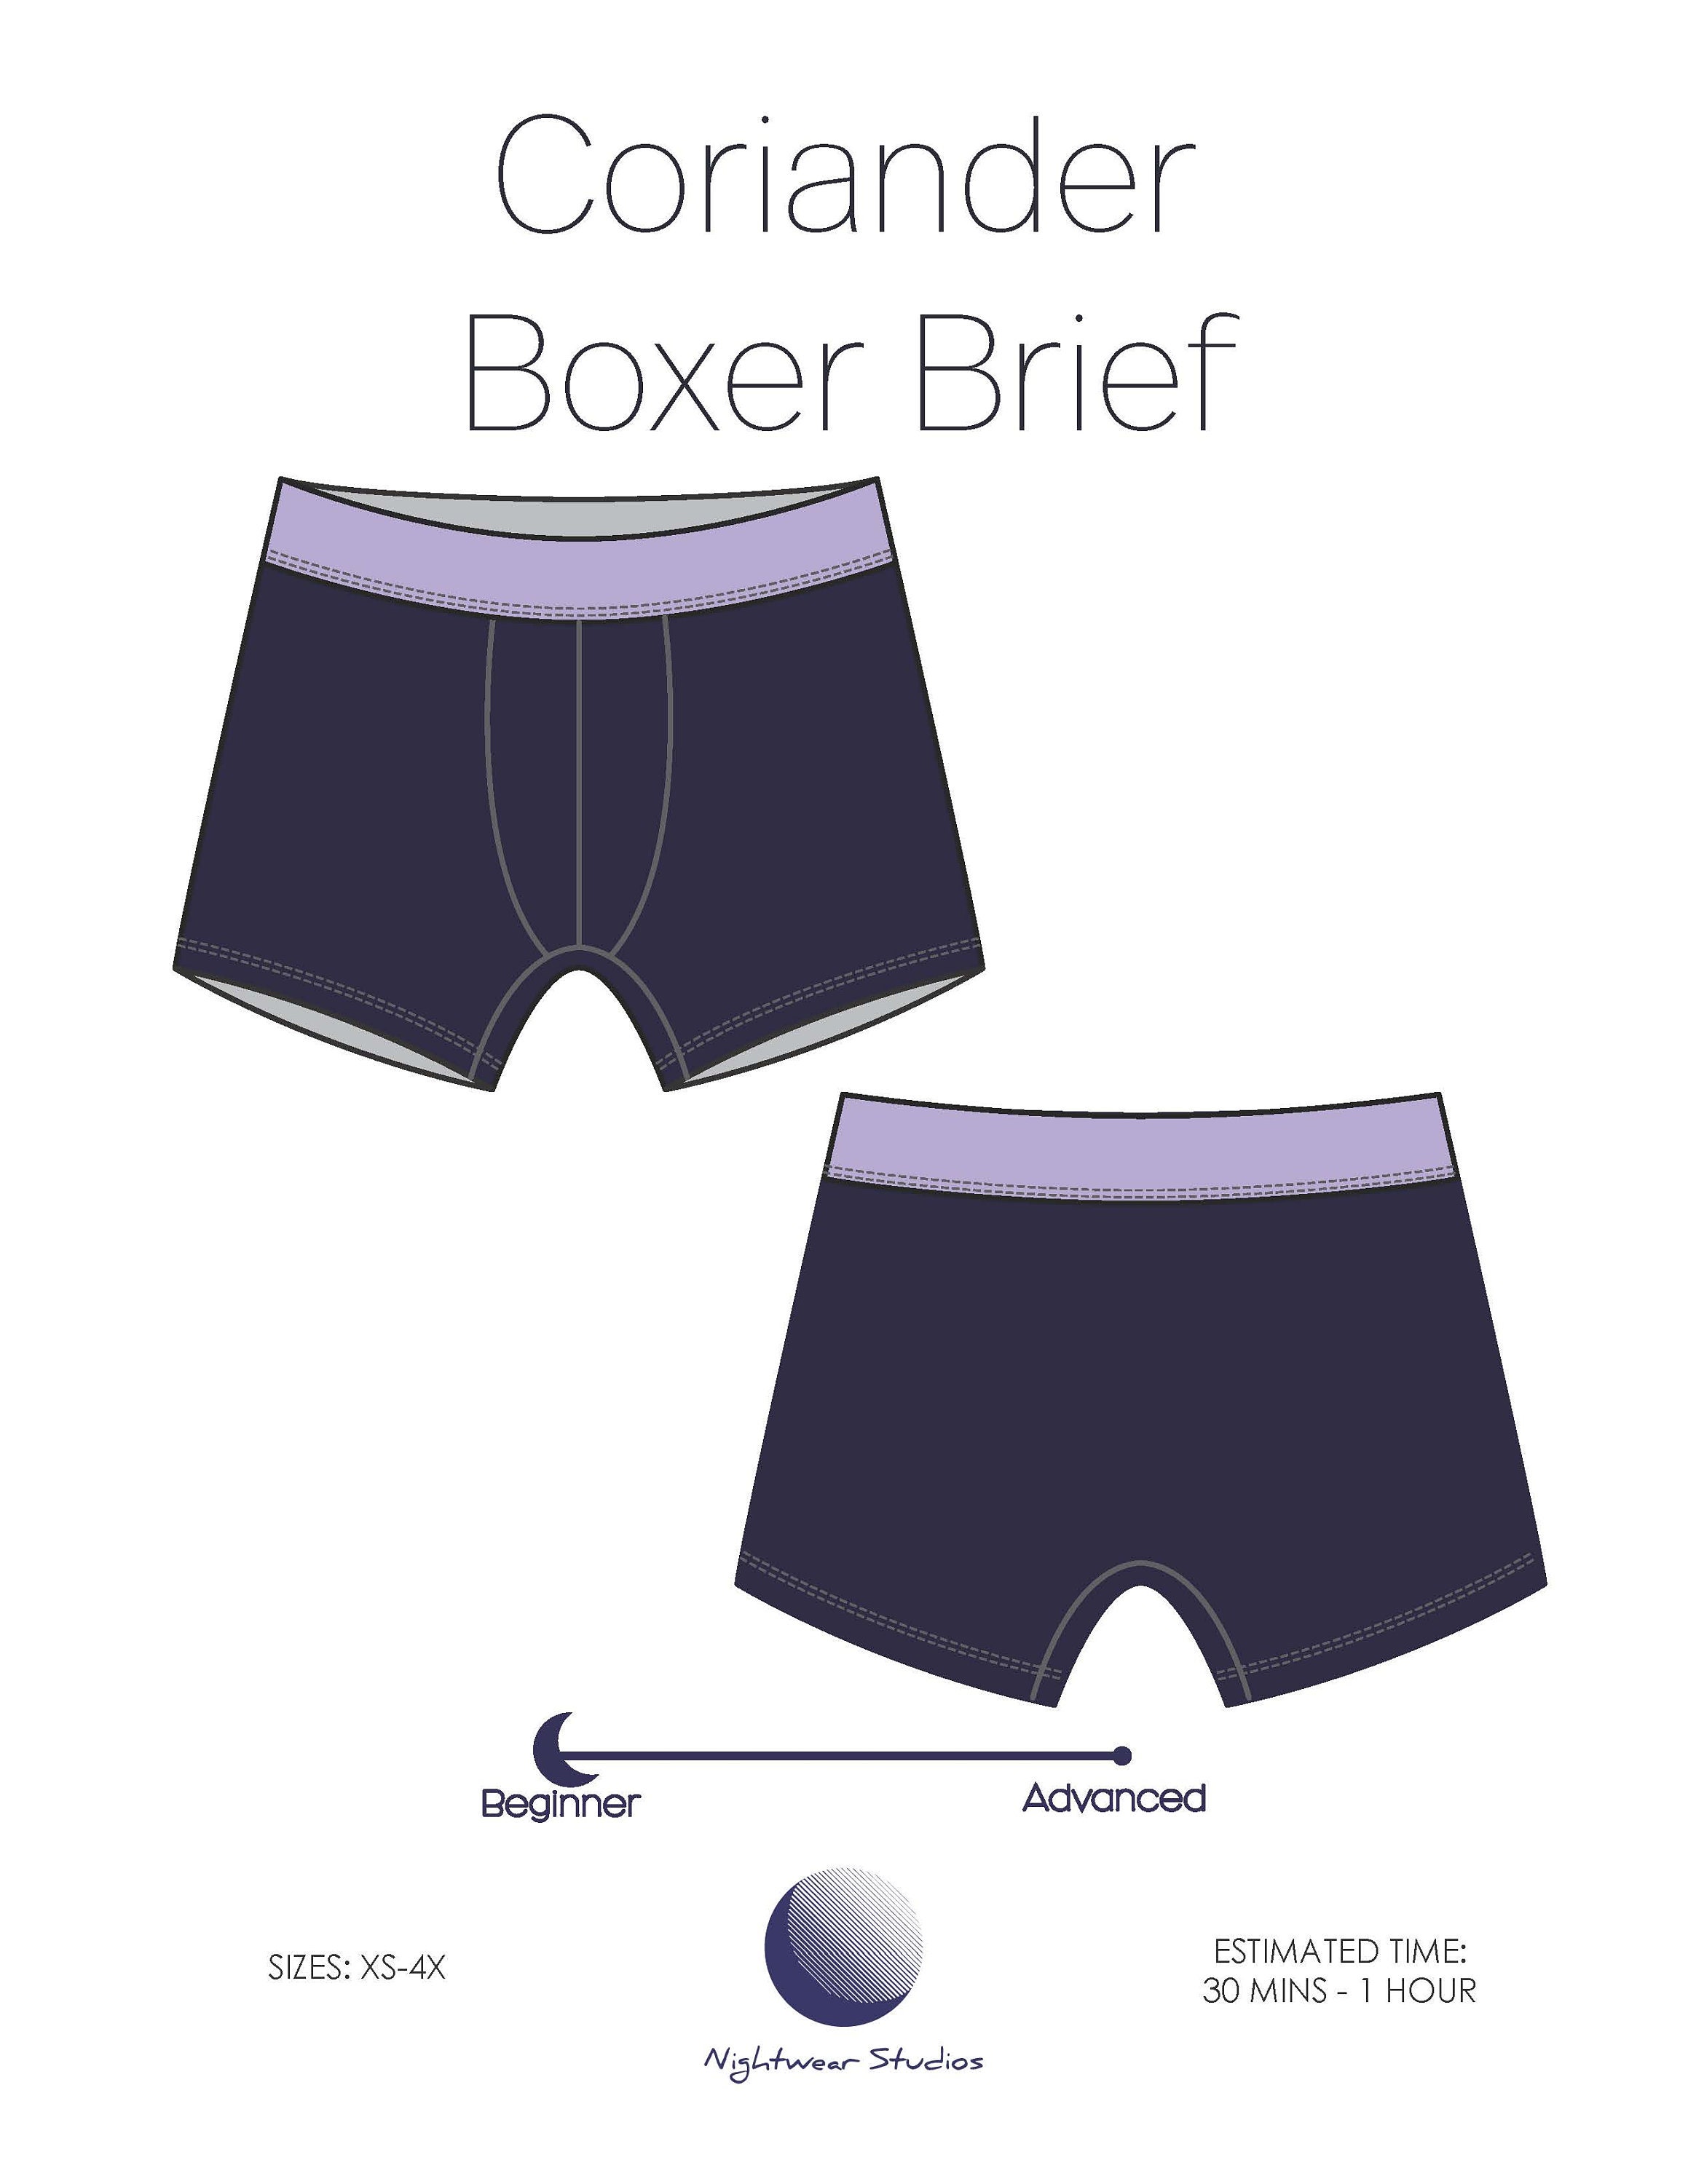 Boxerwear Boxer Brief (With Pouch) Underwear Pattern